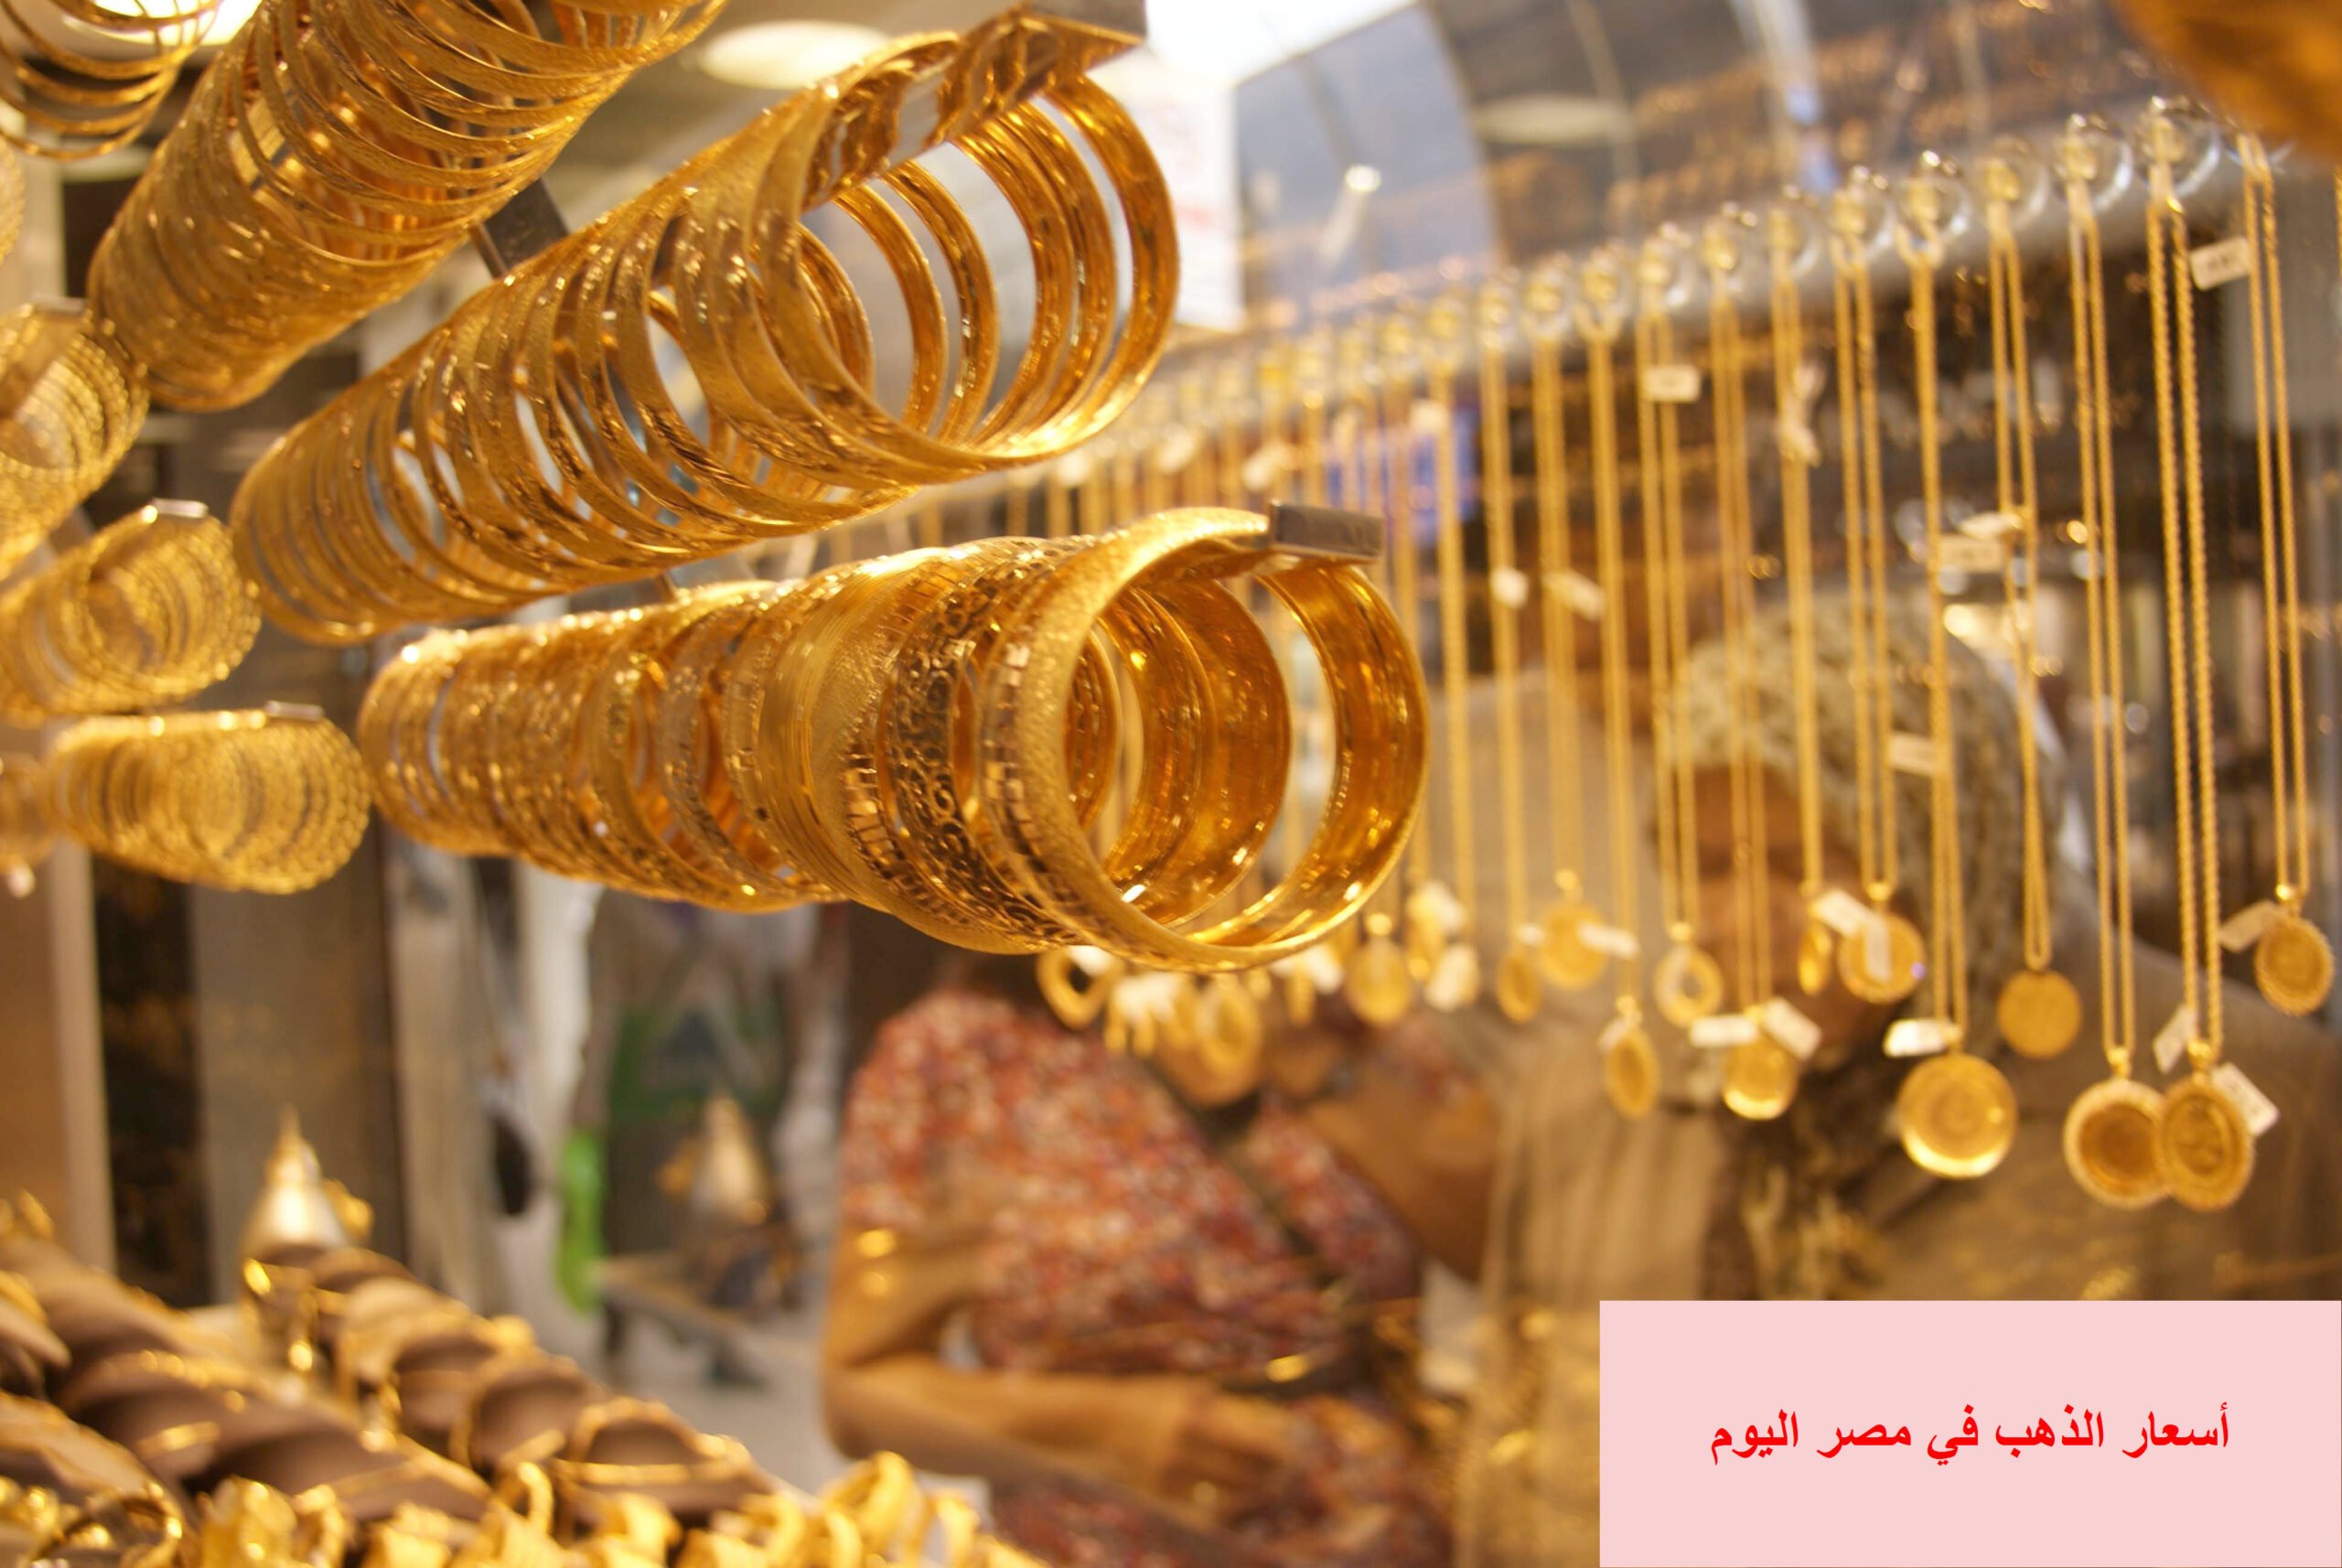 أسعار الذهب في مصر اليوم 19/5/2019 ومقارنة بأسعار الأسابيع الماضية